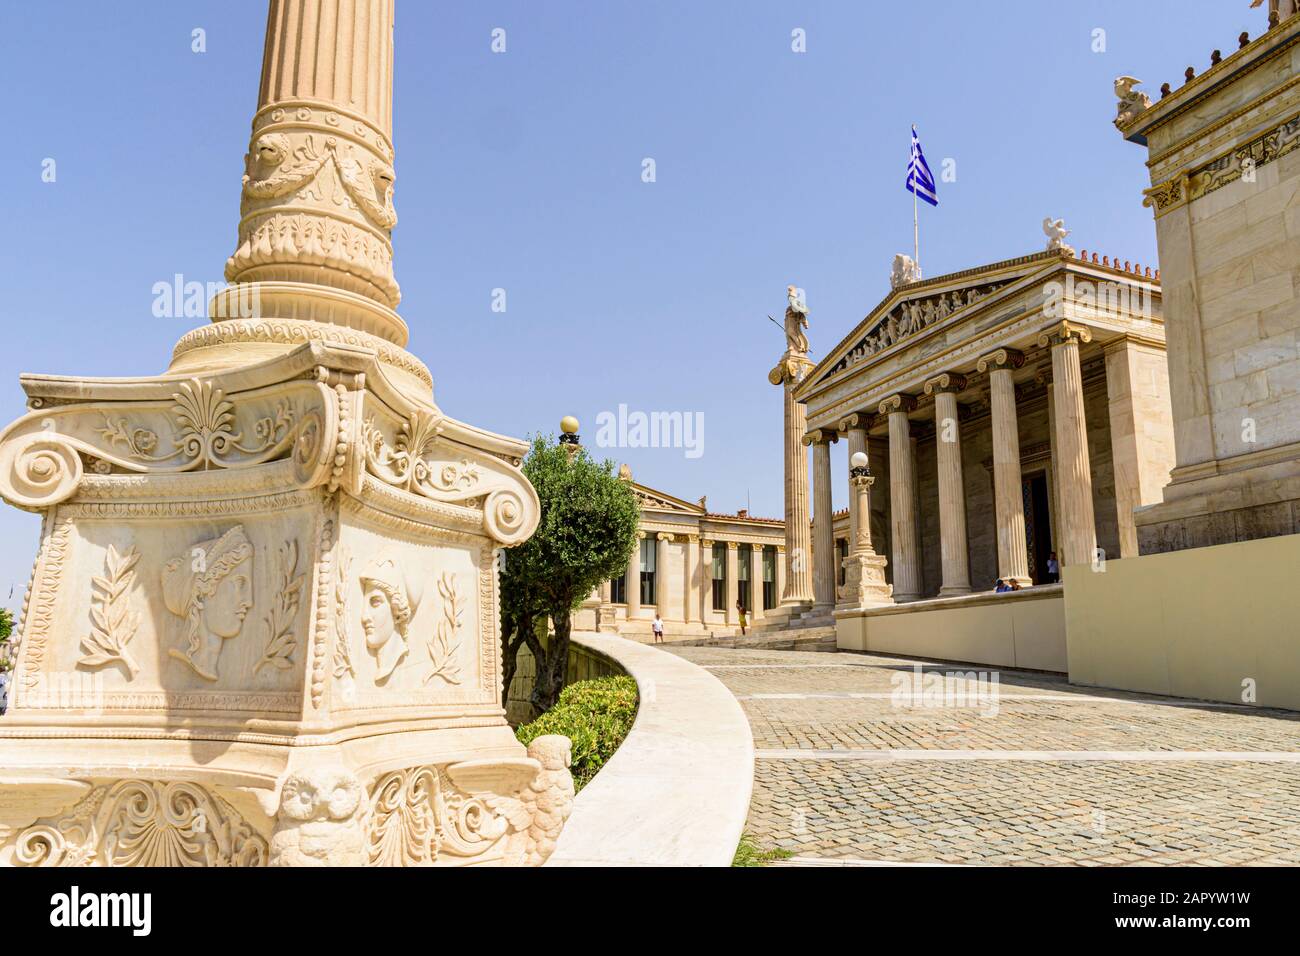 Die Akademie von Athen Teil der neoklassischen Trilogie von Athen, Griechenland Stockfoto